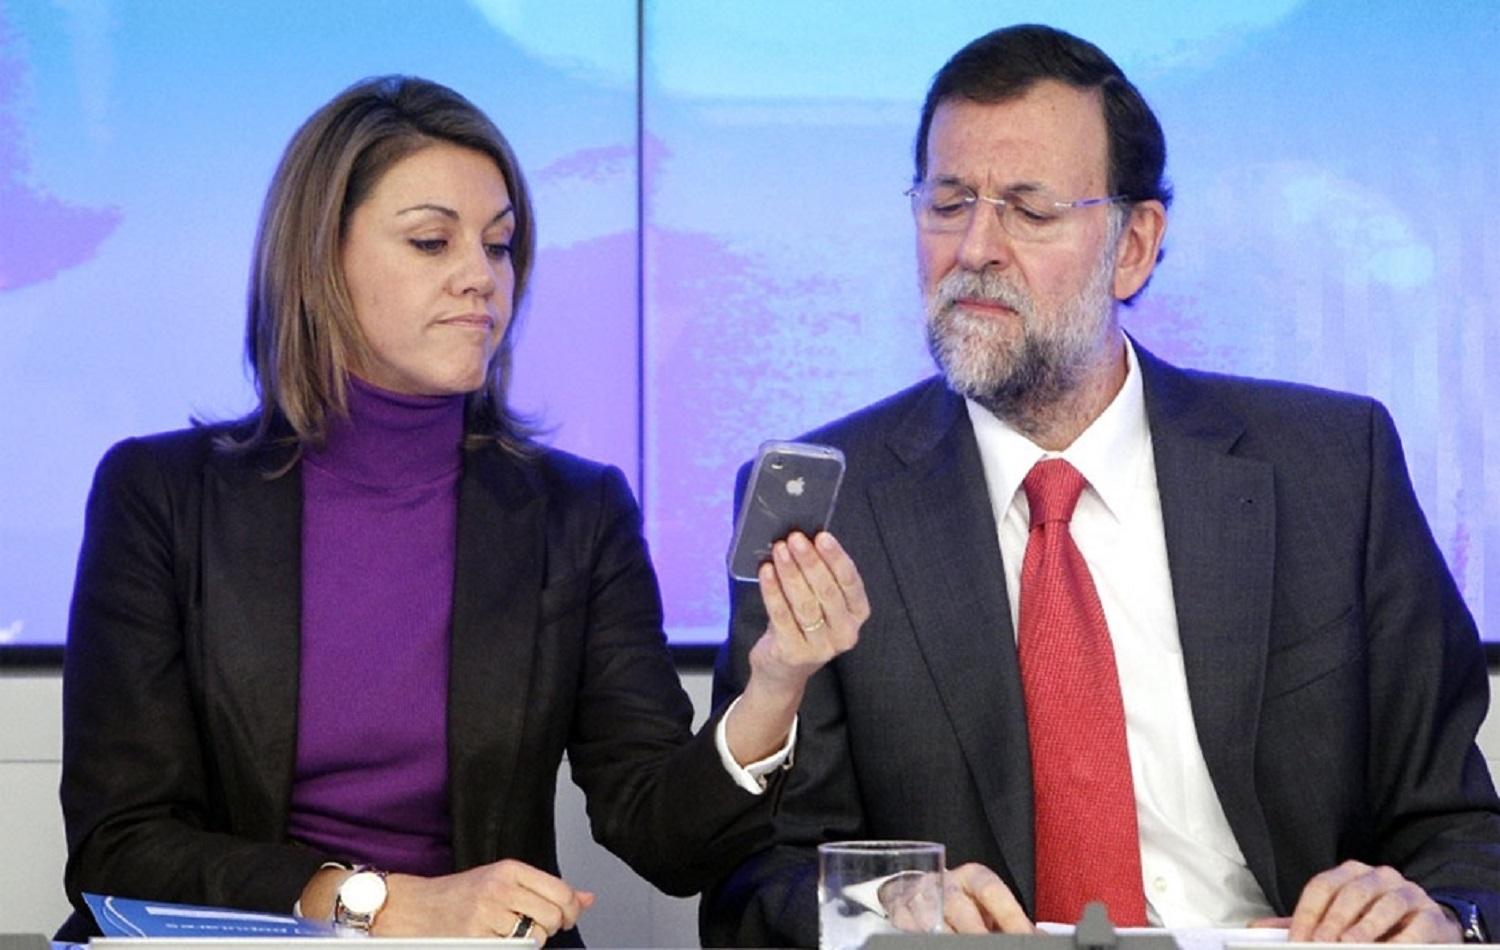 María Dolores de Cospedal y Mariano Rajoy en una imagen de archivo. Fuente: Europa Press.